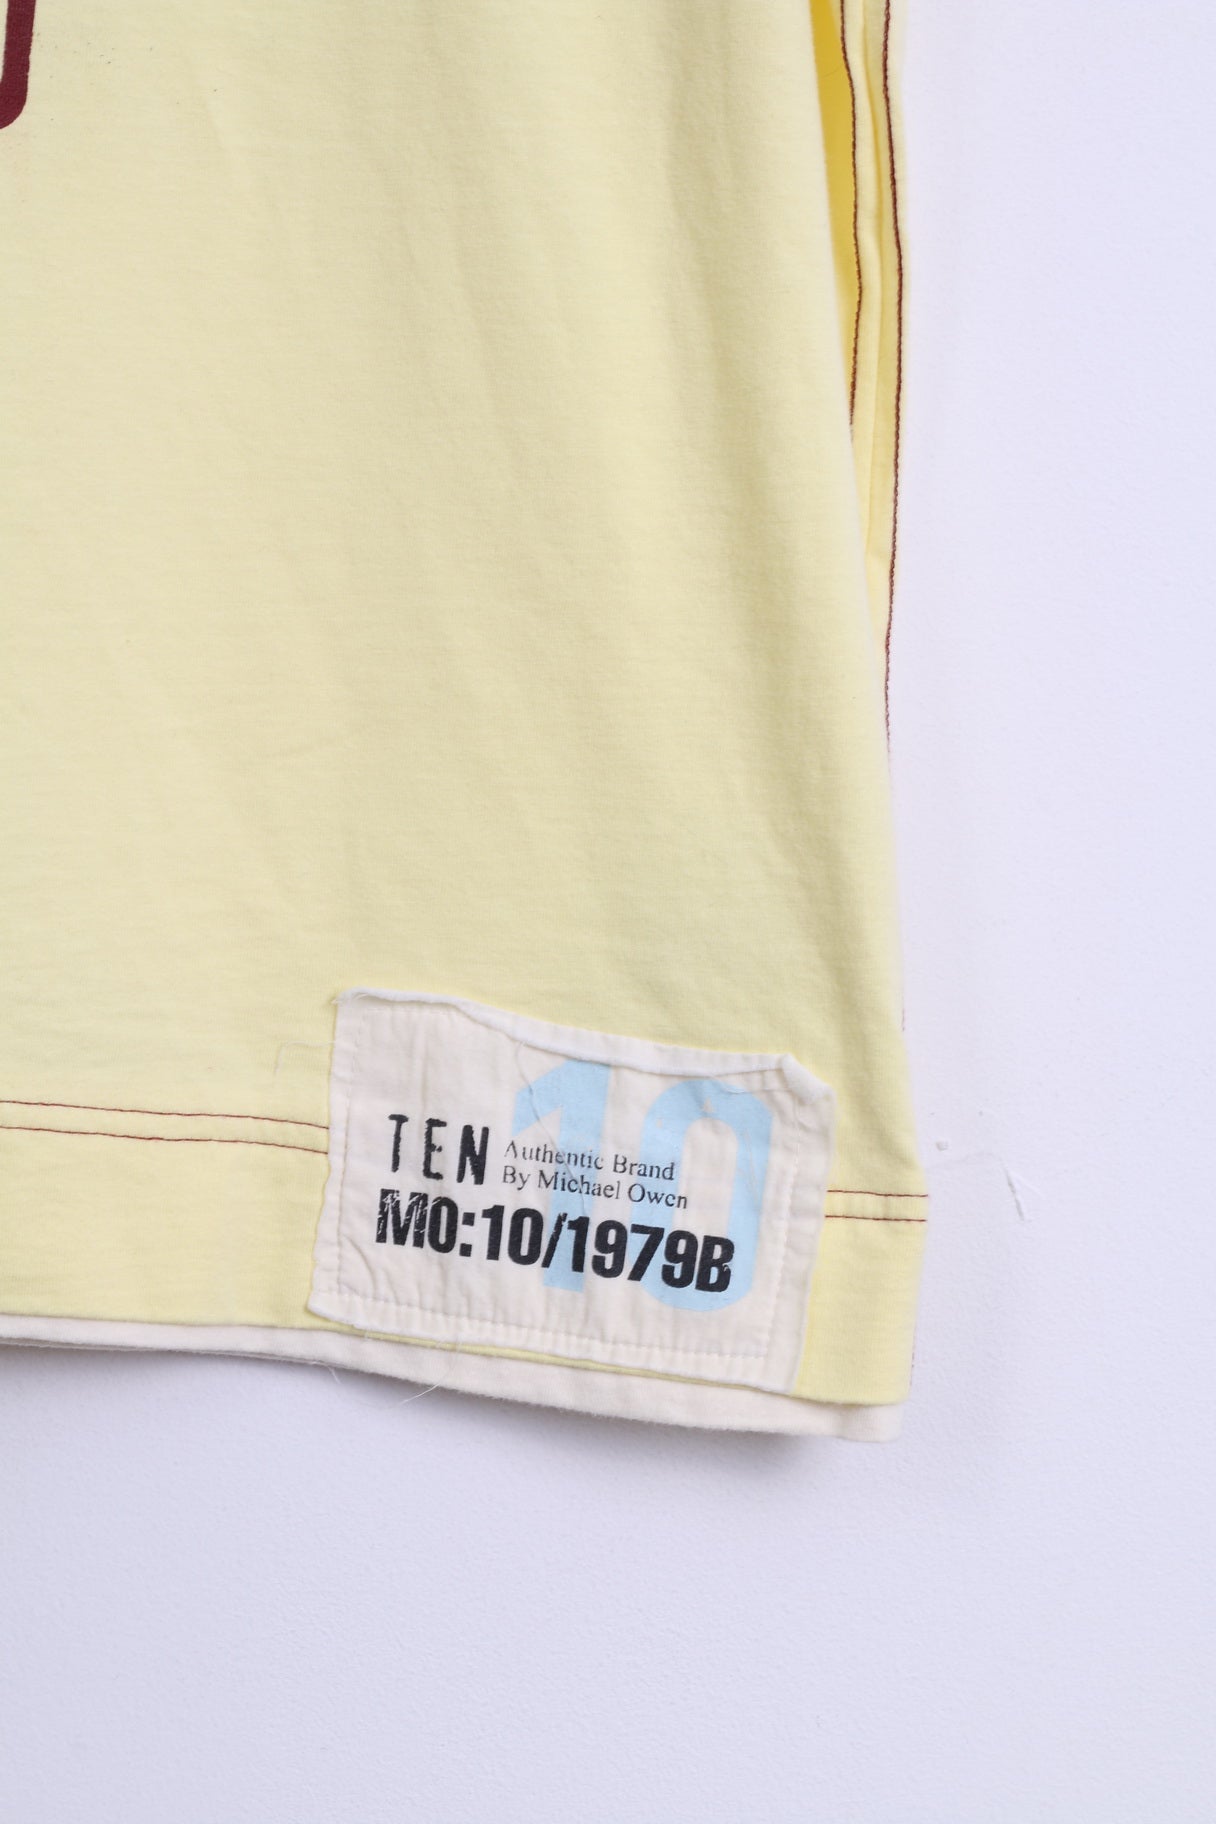 TEN By Michael Owen Mens XL T-Shirt Yellow Cotton England 10 Football